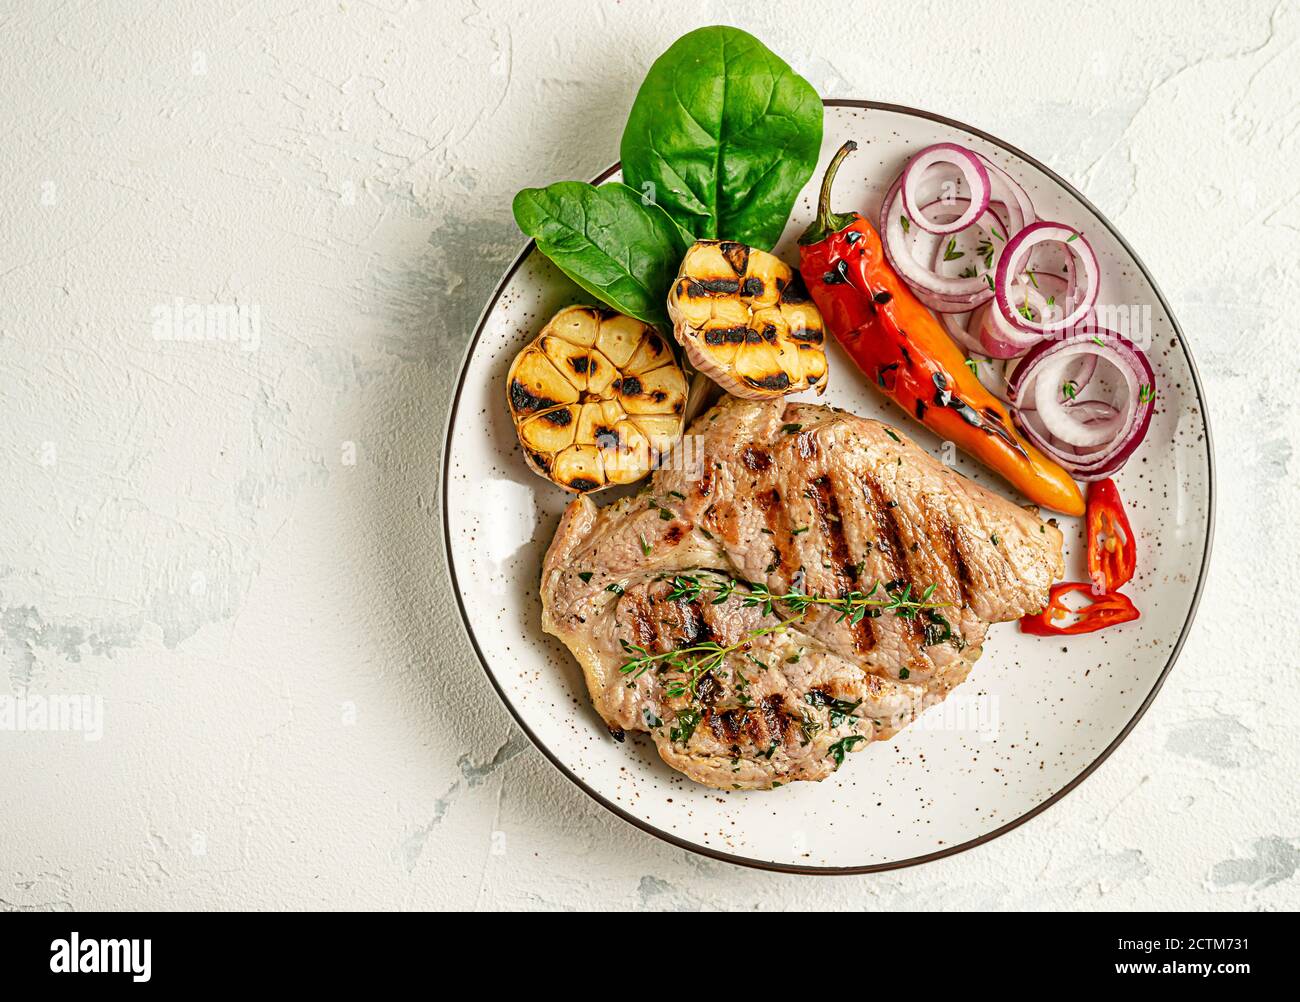 Assiette de steak de porc grillé avec légumes sur fond de béton. Concept de  régime cétogène. Surcharge, espace de copie Photo Stock - Alamy